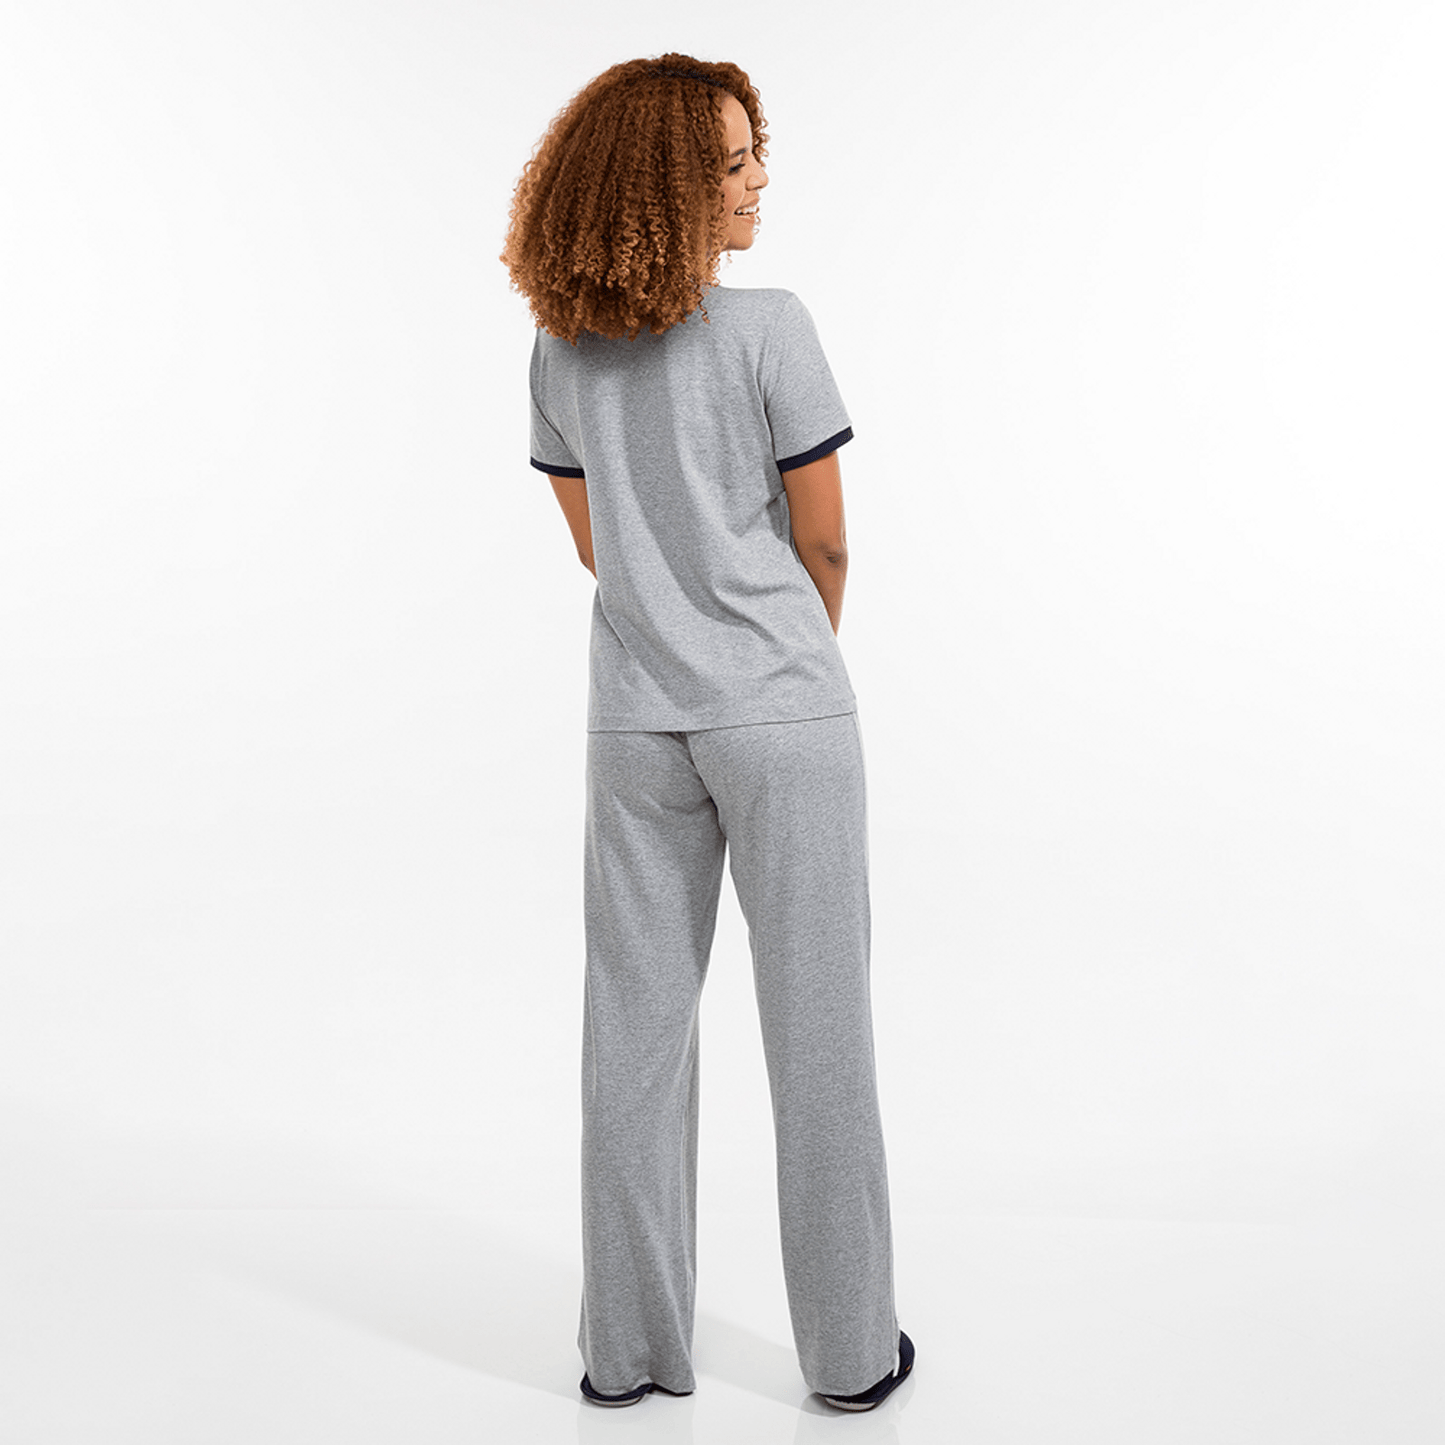 Pijama feminino essential manga curta com calca cinza. Detalhes na manga. Modelo vista de costas